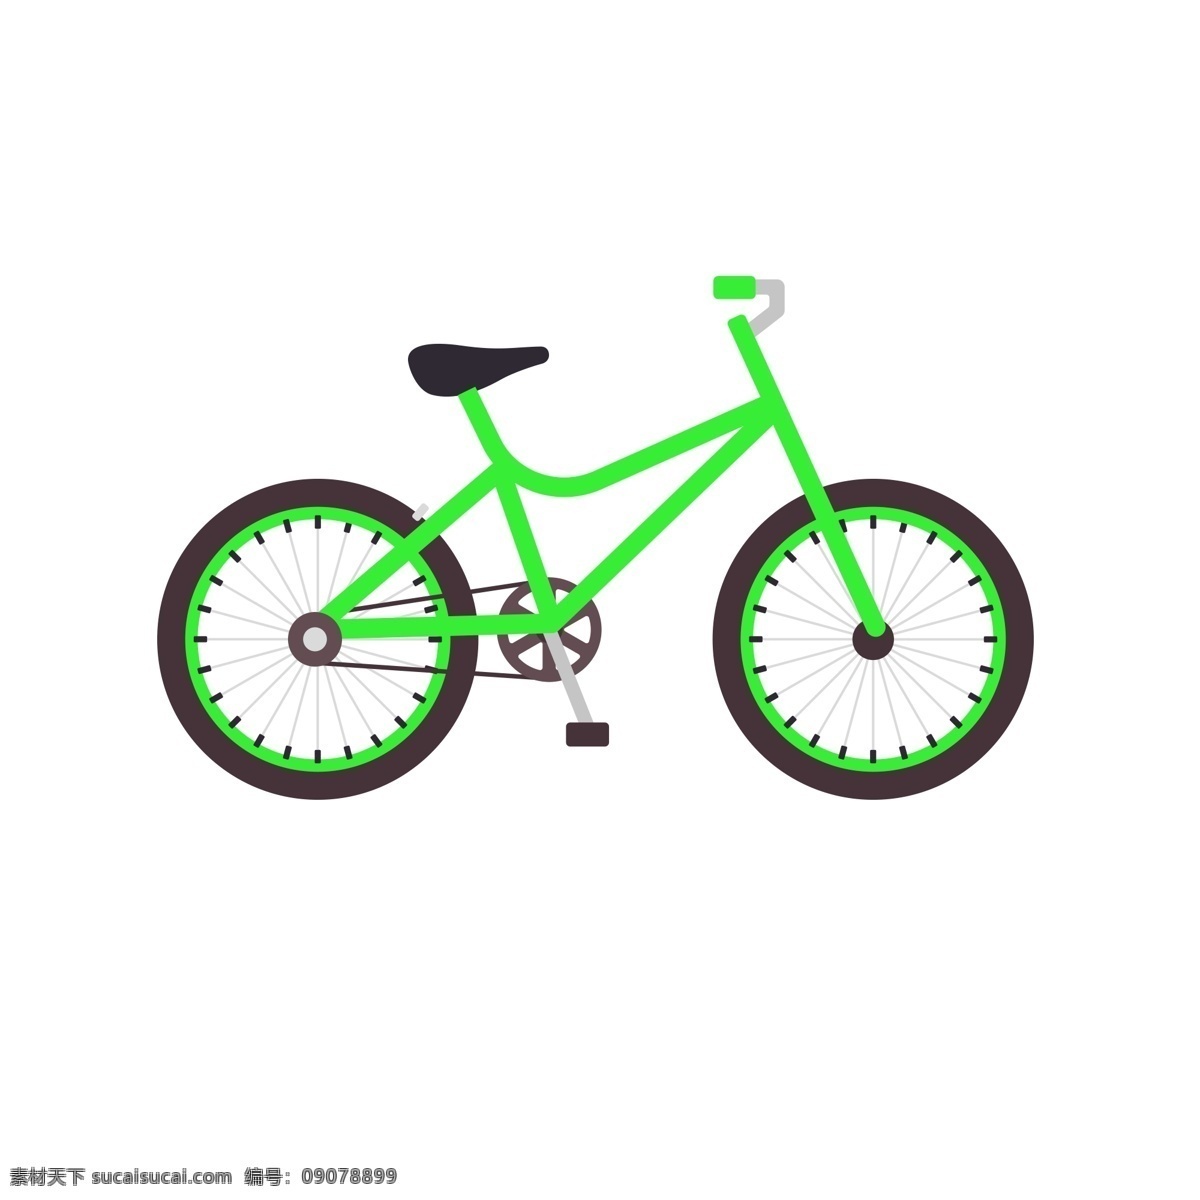 绿色 山地 自行车 赛车 加速 商用 彩色 环保 方便 脚踏